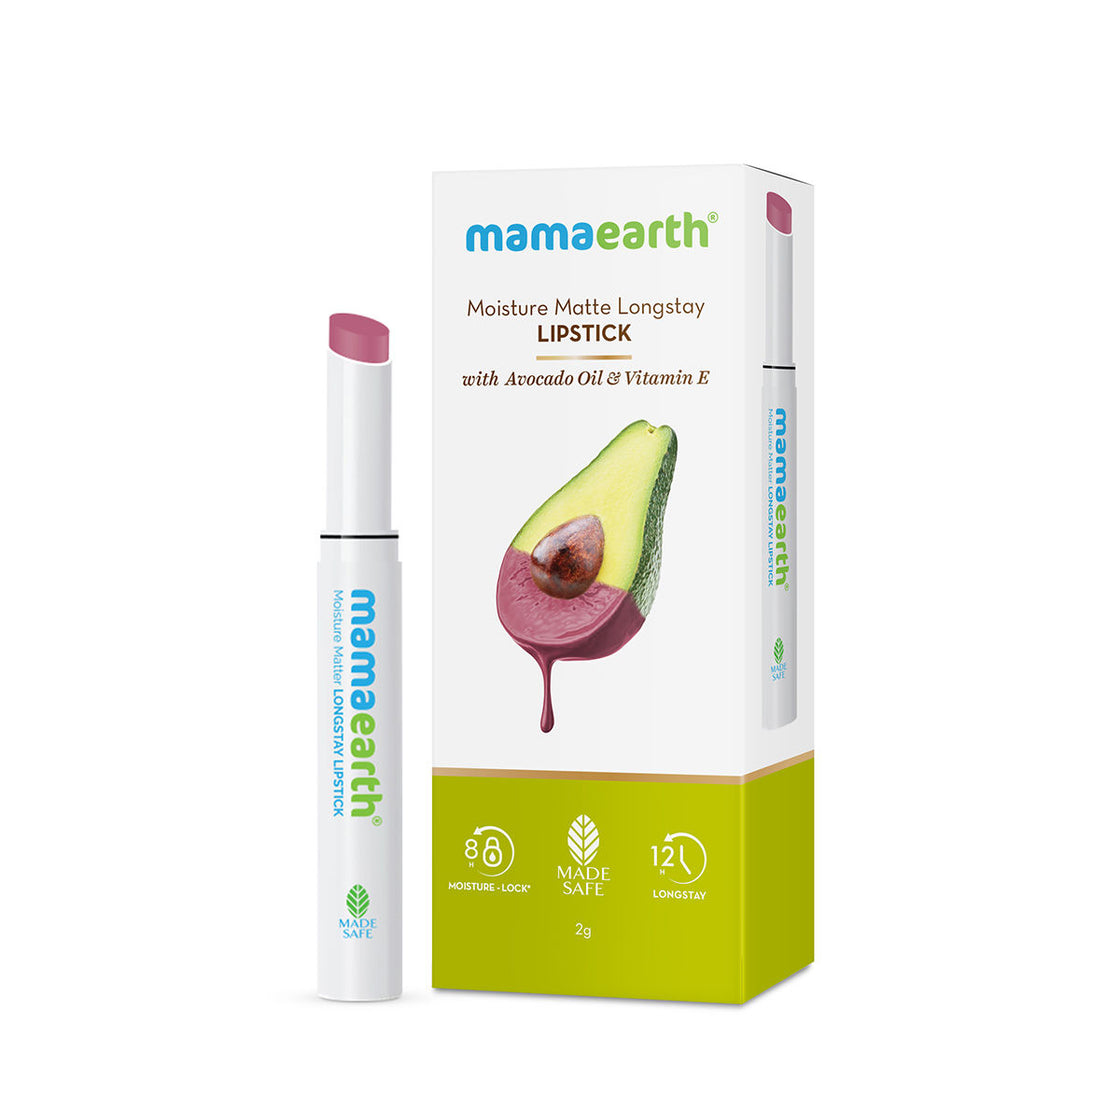 Mamaearth Moisture Matte Longstay Lipstick With Avocado Oil & Vitamin E-5